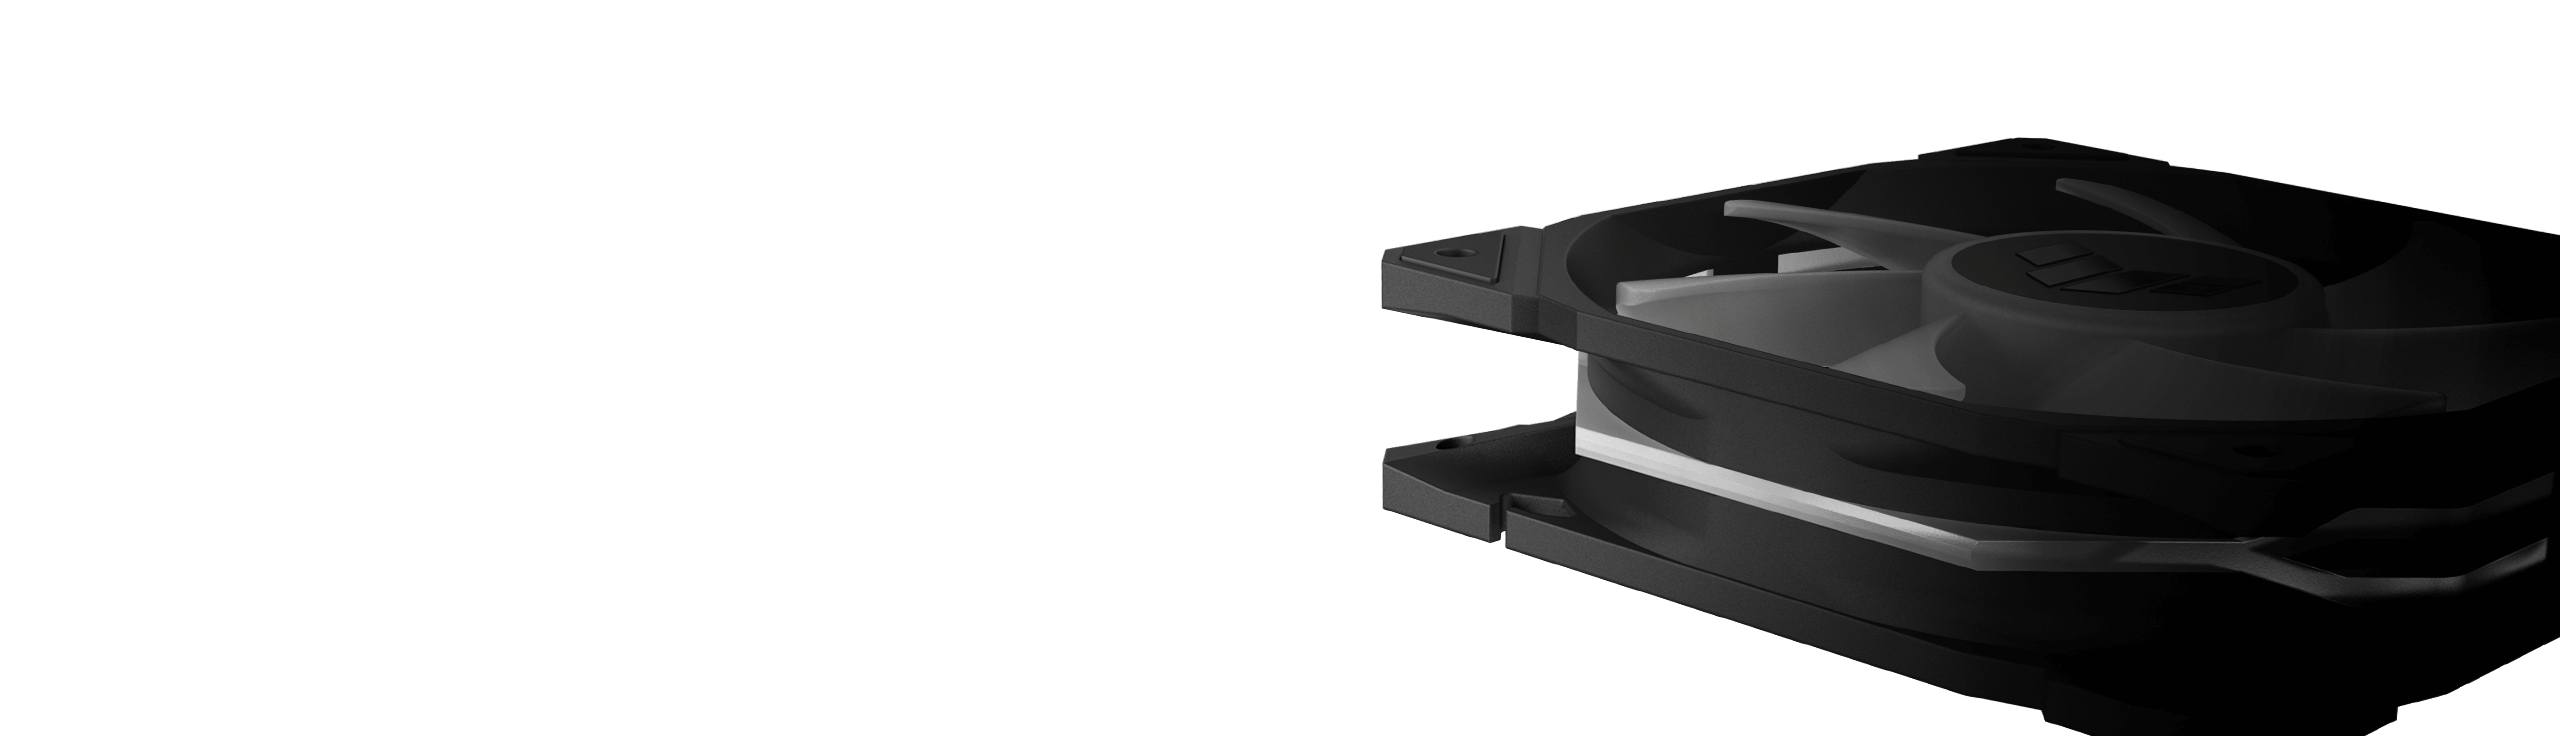 Extradicker 28-mm-Lüfterrahmen des ASUS TUF Gaming TR120 ARGB-Lüfters im Vergleich zu anderen 25-mm-Lüfterrahmen